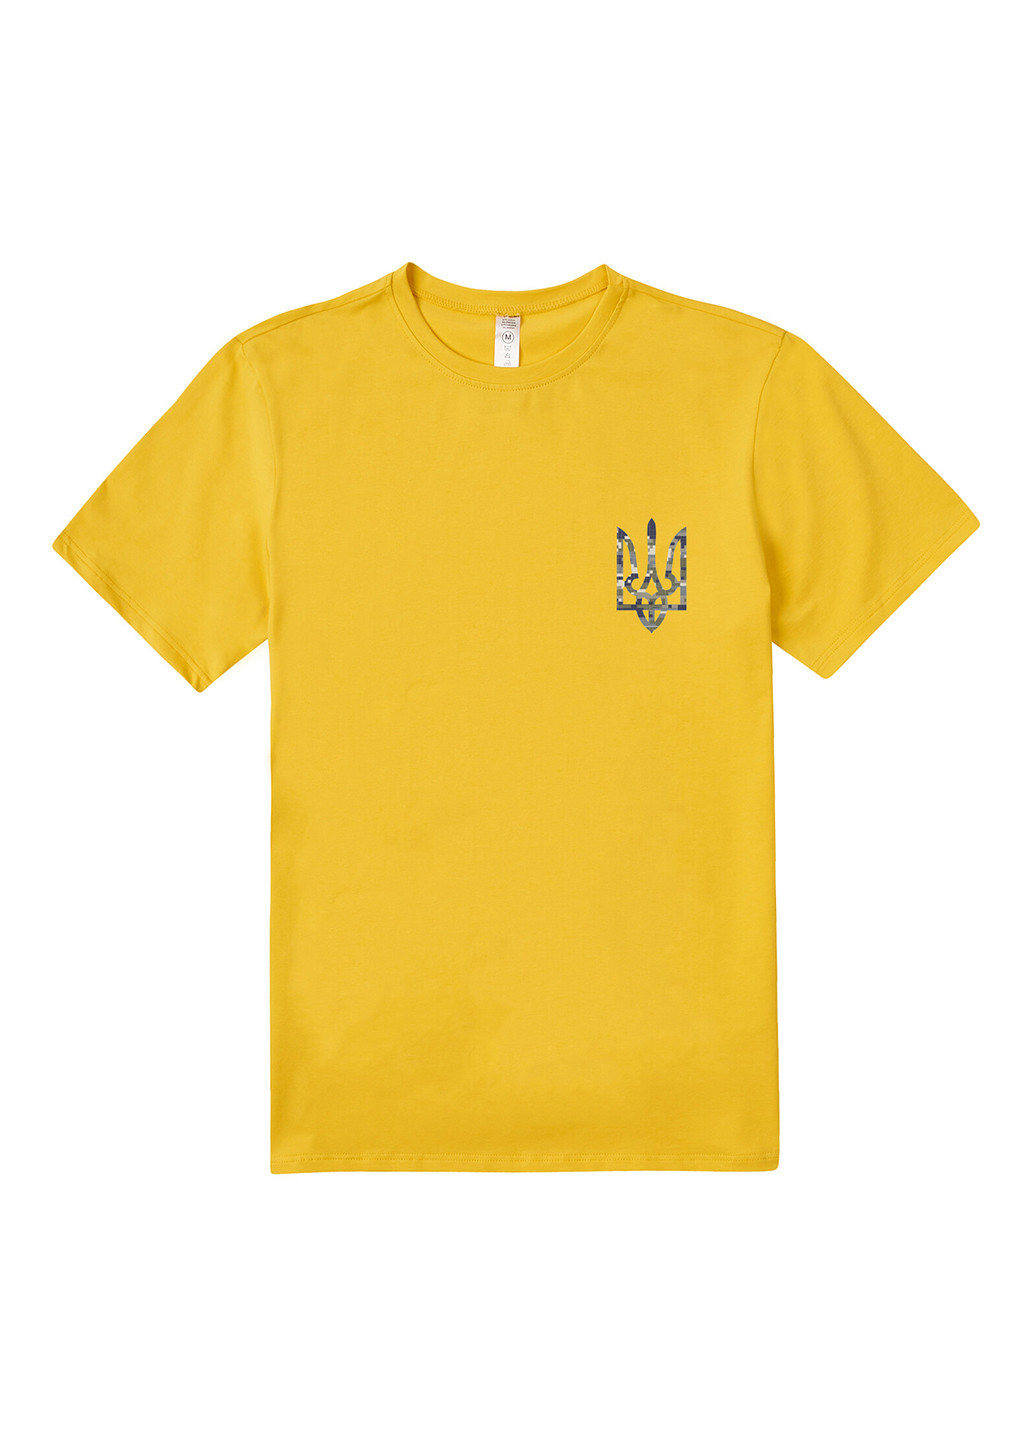 Жовта футболка Garnamama